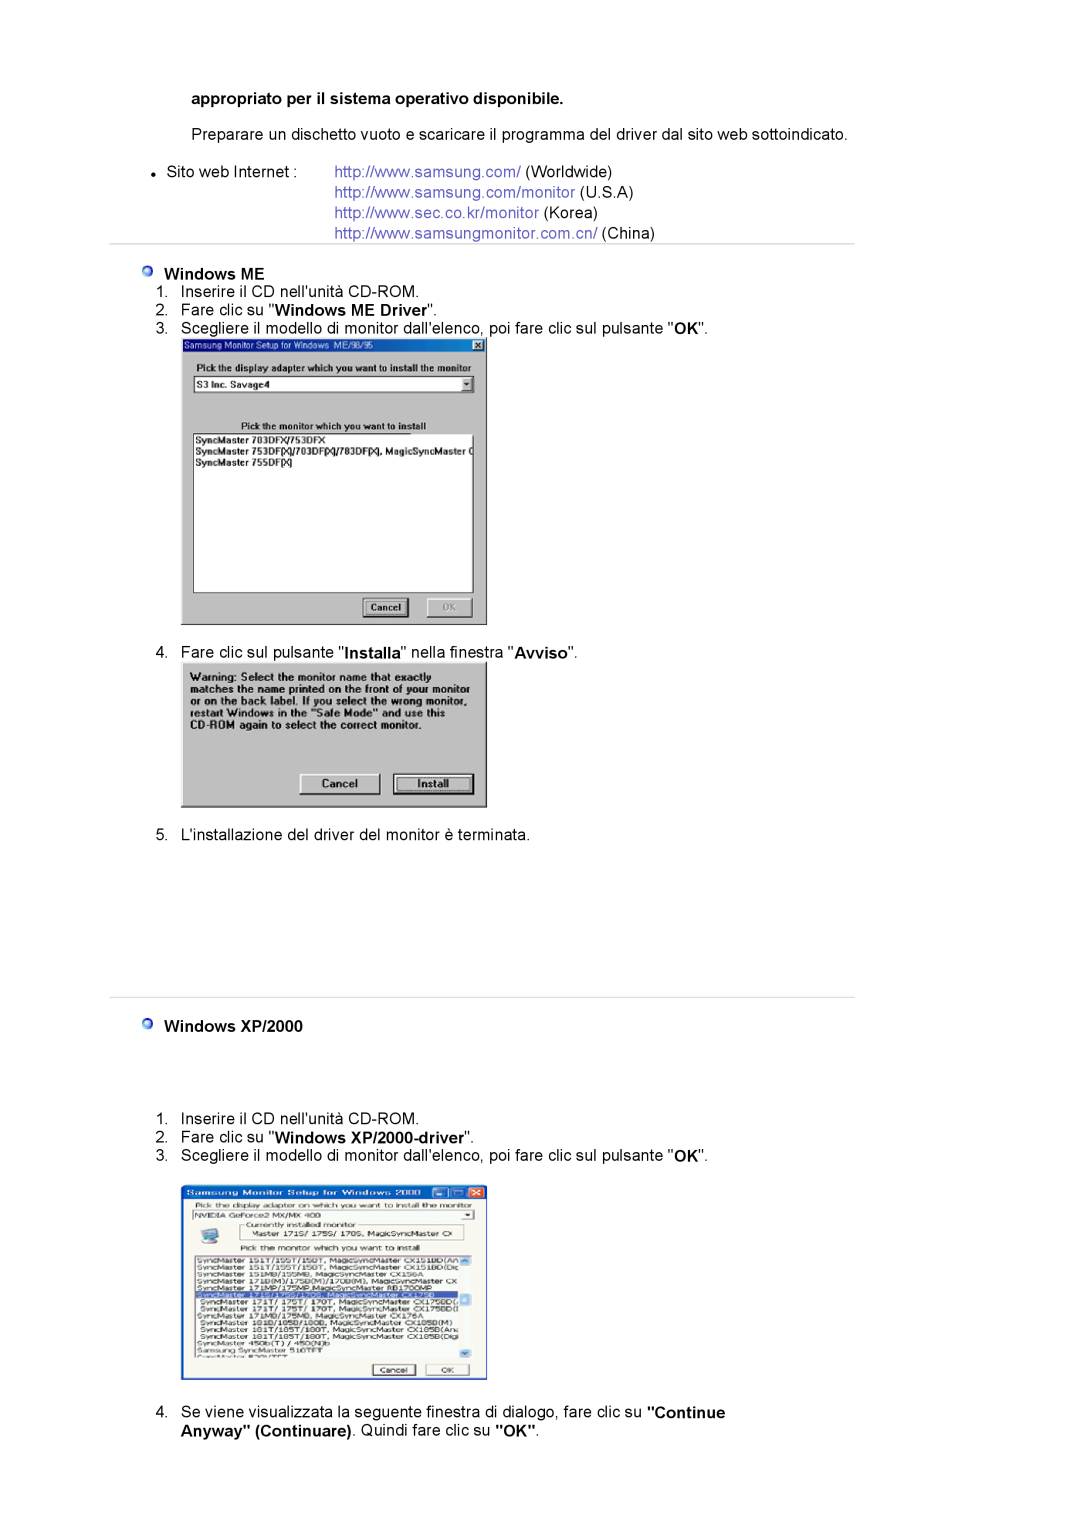 Samsung LS17MJVKS/EDC manual appropriato per il sistema operativo disponibile, Fare clic su Windows ME Driver 